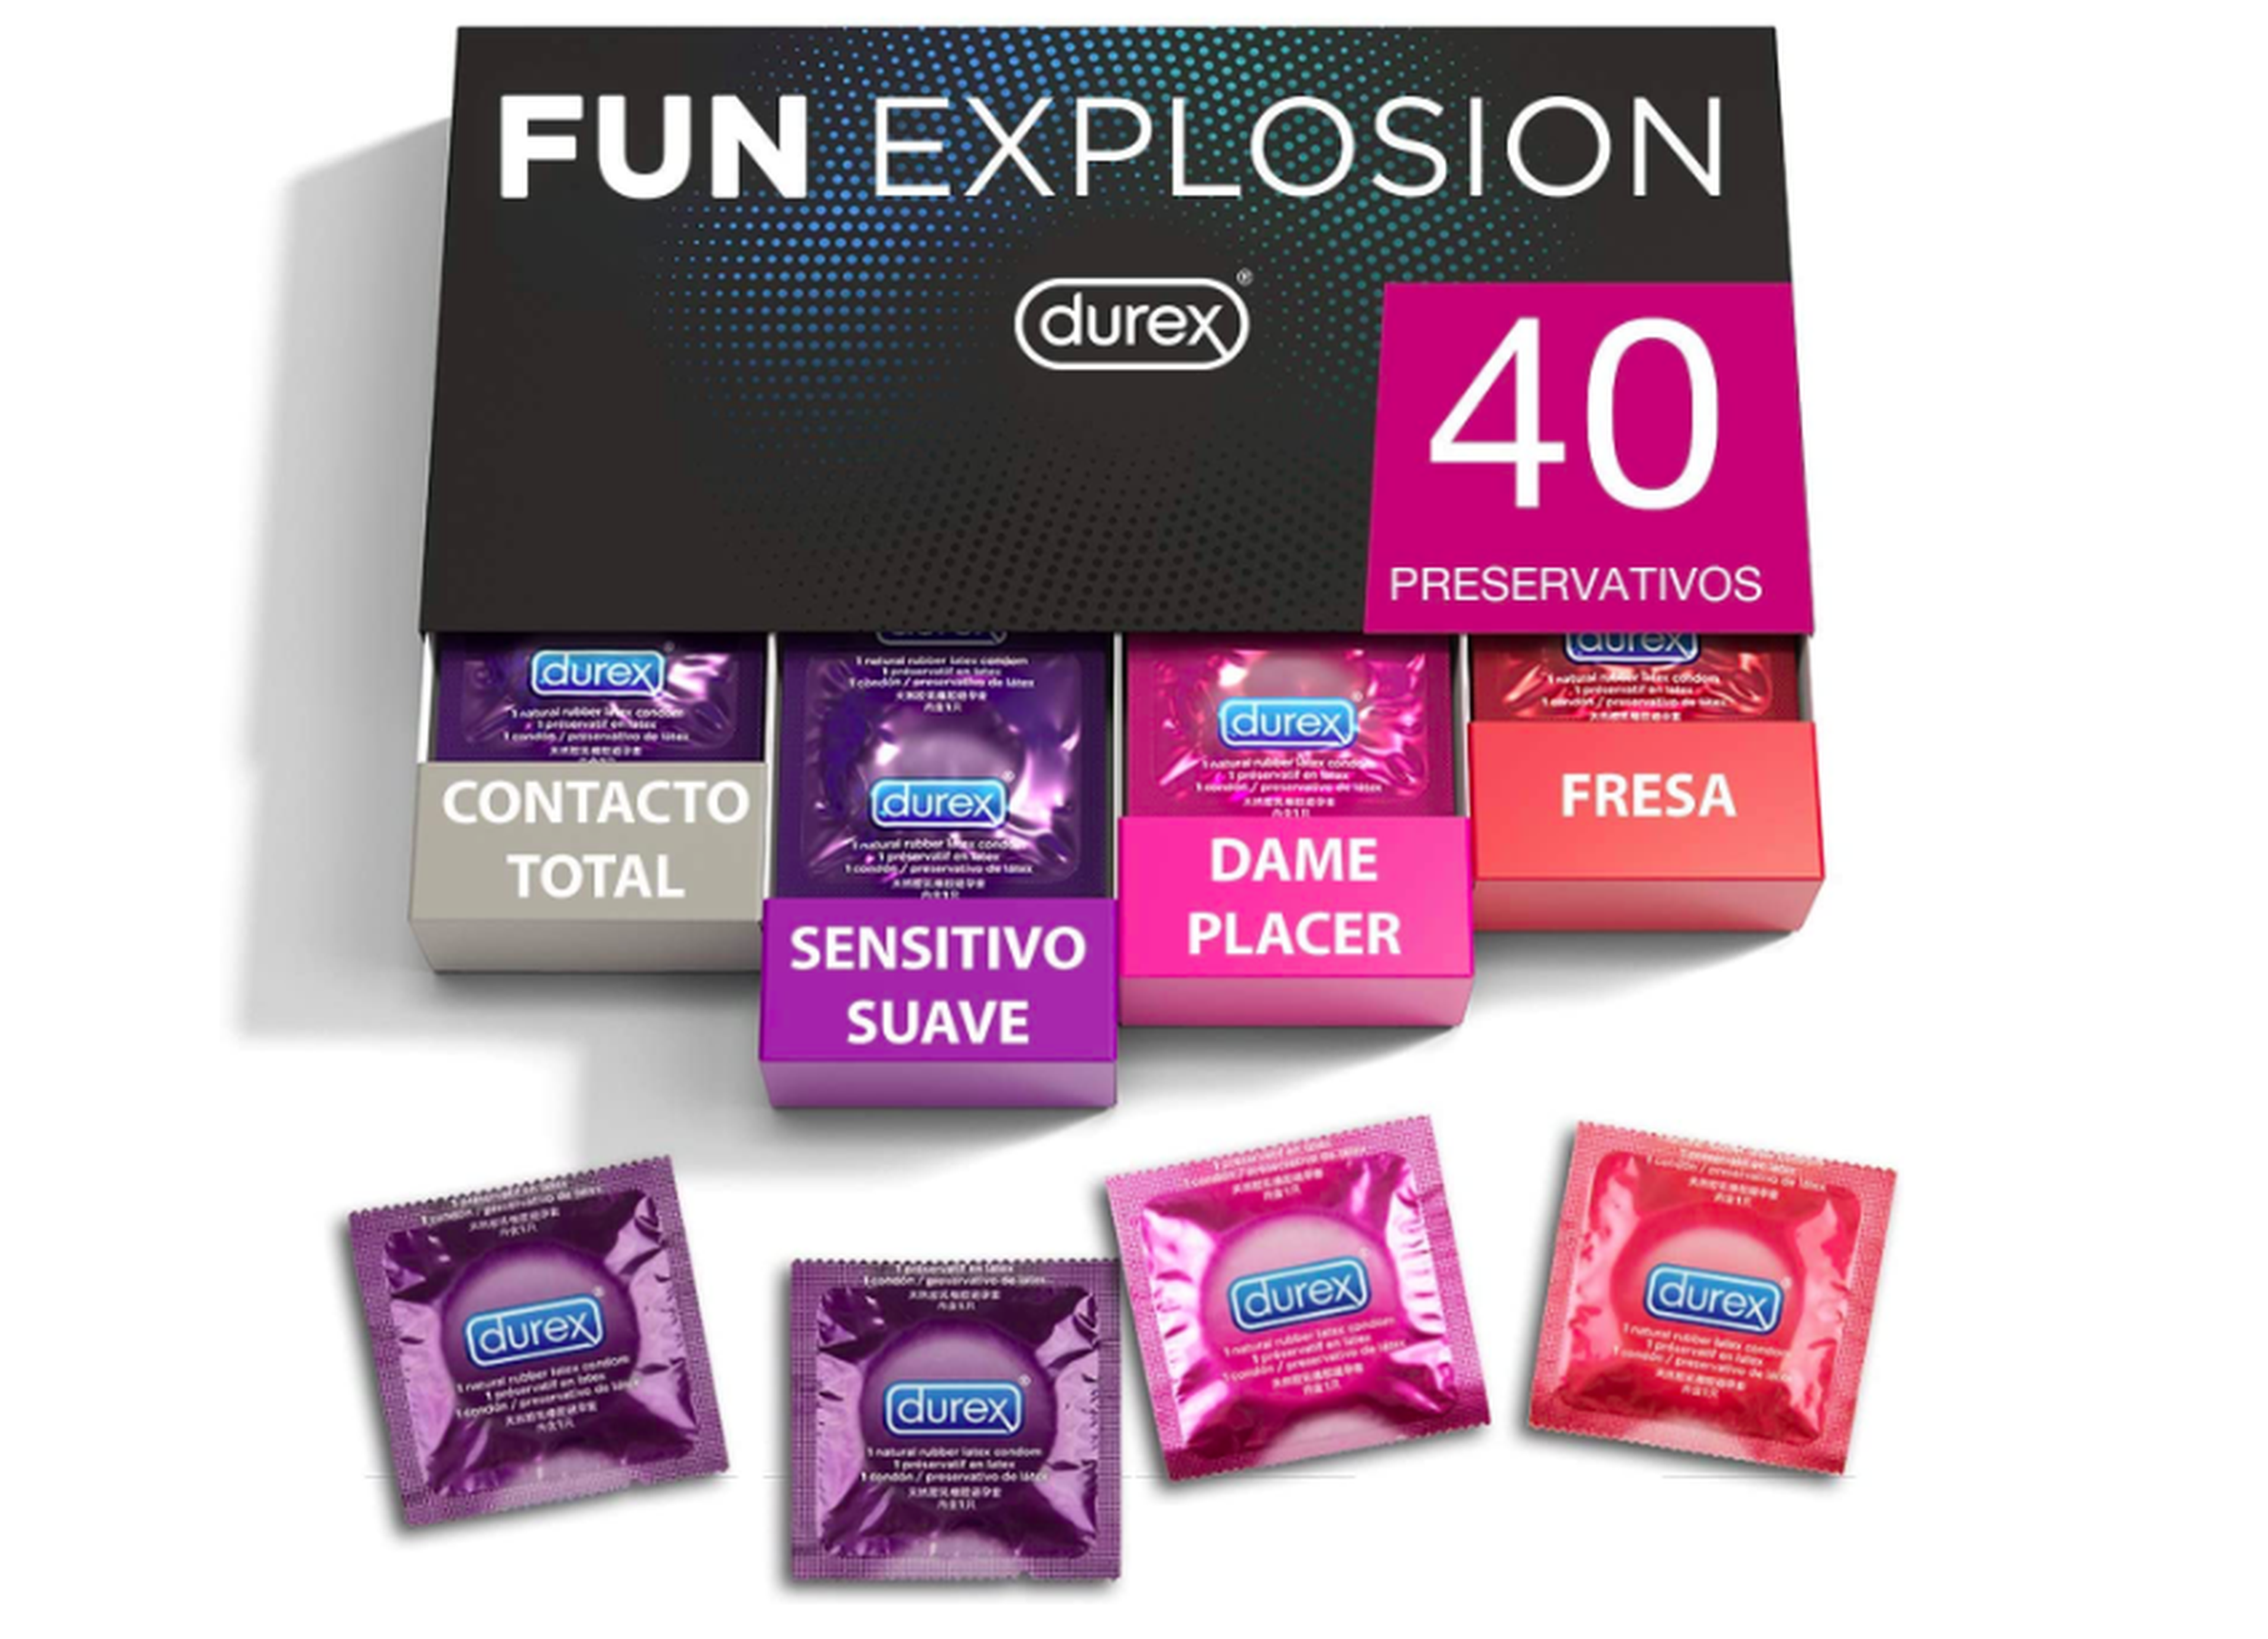 Durex Preservativos Fun Explosion mixtos Sabor Fresa, Dame Placer, Sensitivo Suave y Contacto Total, 40 condones, 52 y 56 mm.